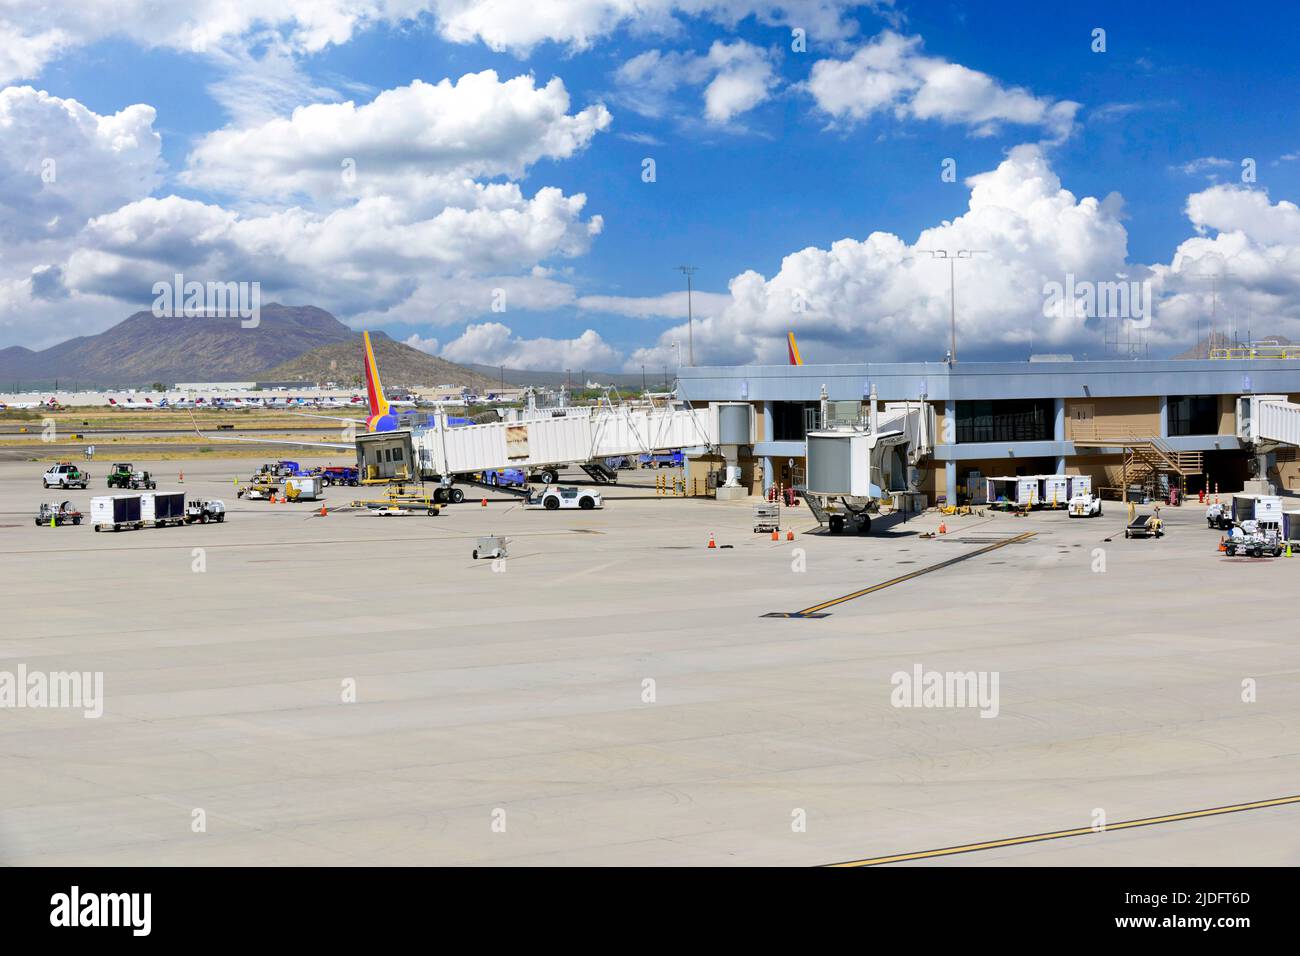 Le Boeing 737 de Southwest Airlines est desservi à l'aéroport international de Tucson, AZ Banque D'Images